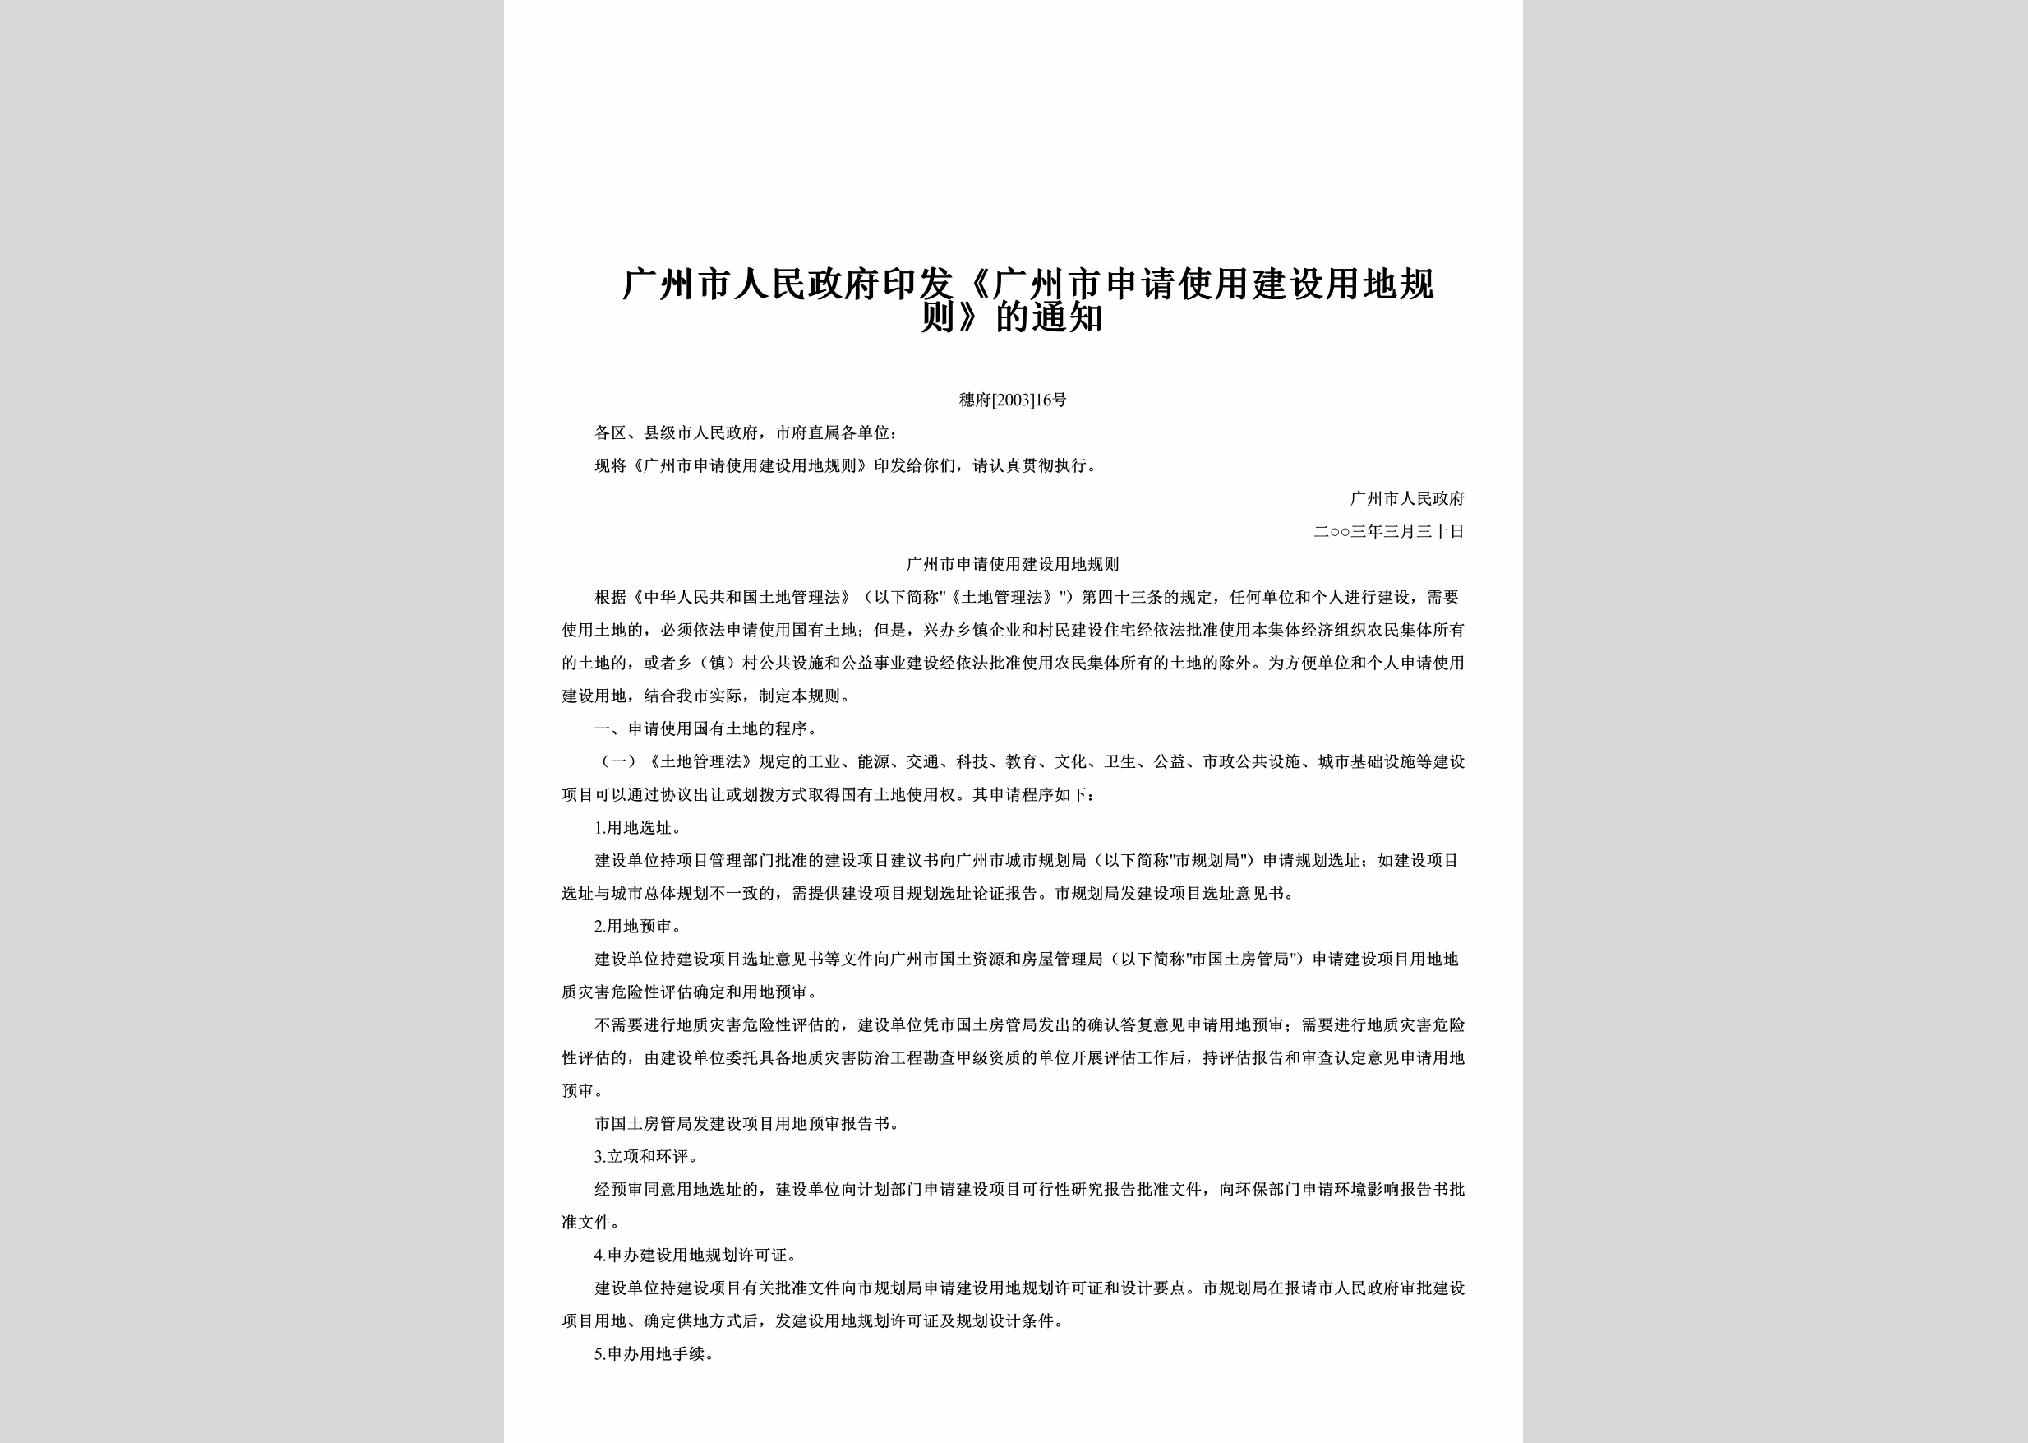 穗府[2003]16号：印发《广州市申请使用建设用地规则》的通知